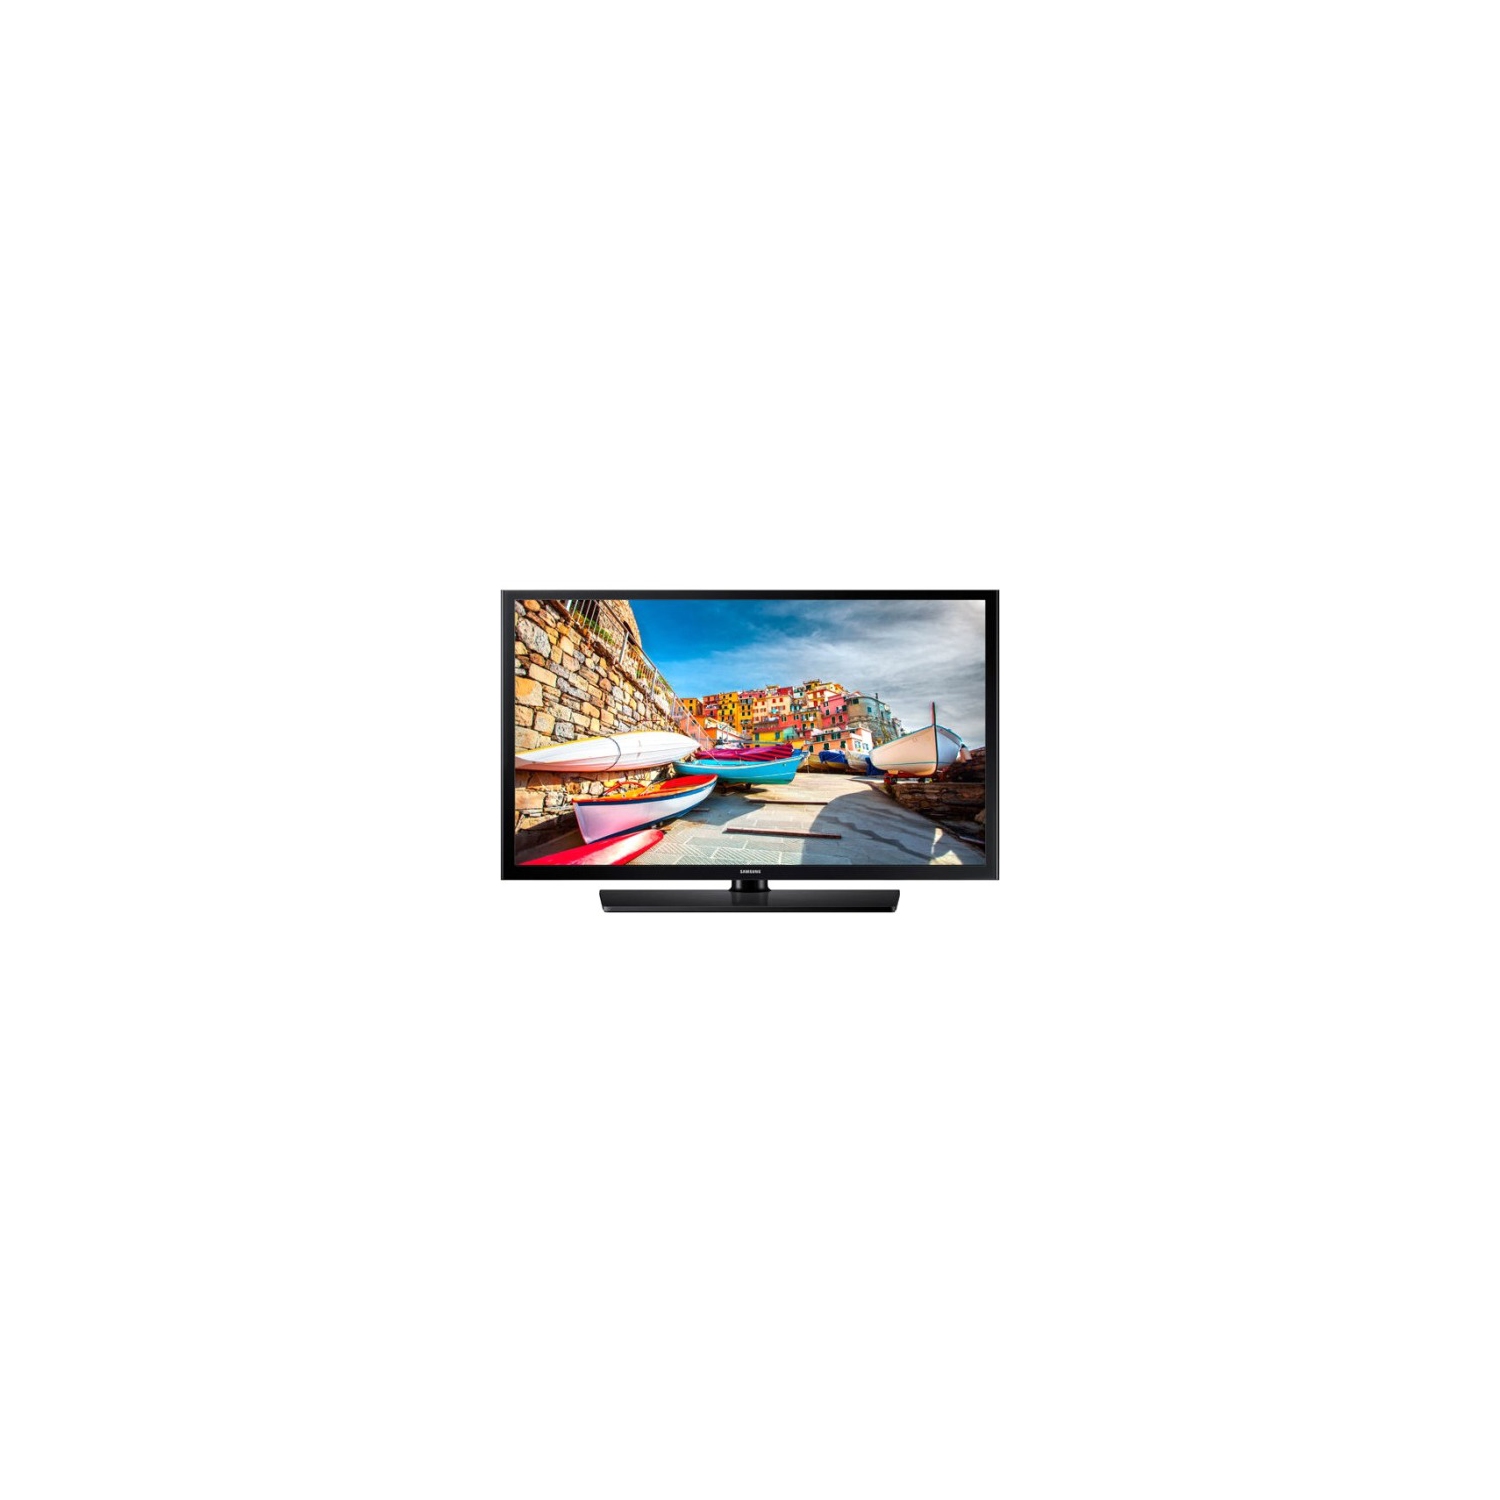 Samsung 49" HD LED-LCD TV (HG49NE470HF) - Black